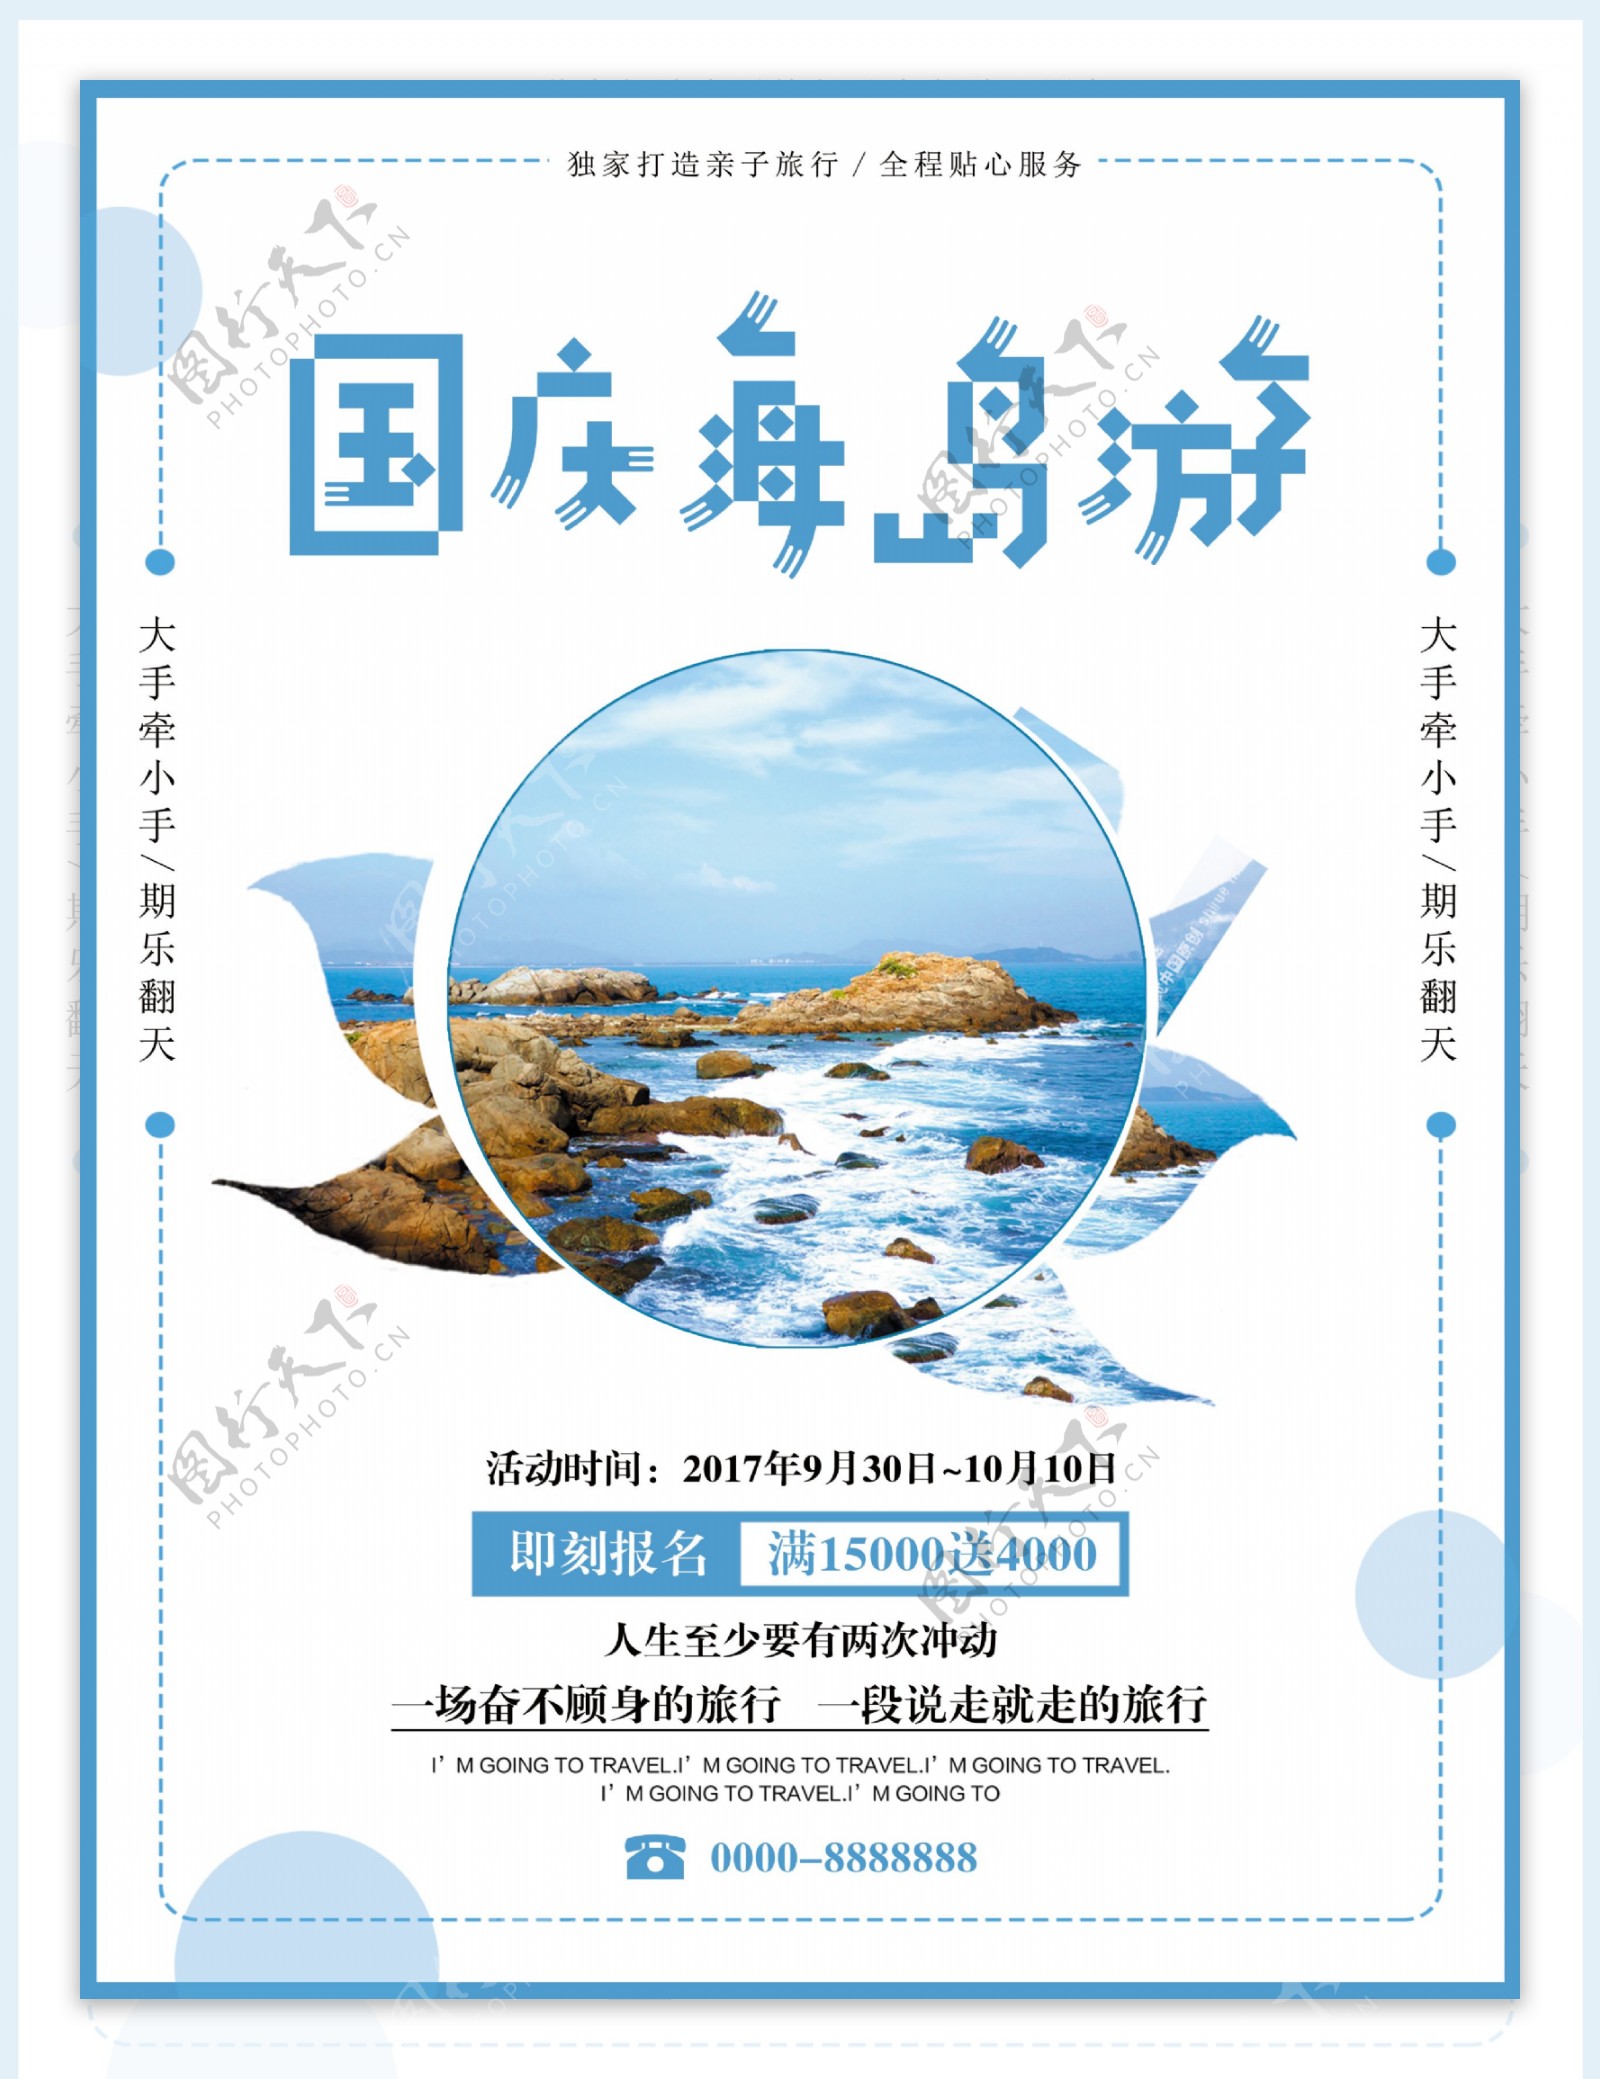 蓝白色简约清新国庆节海岛旅行旅游促销海报